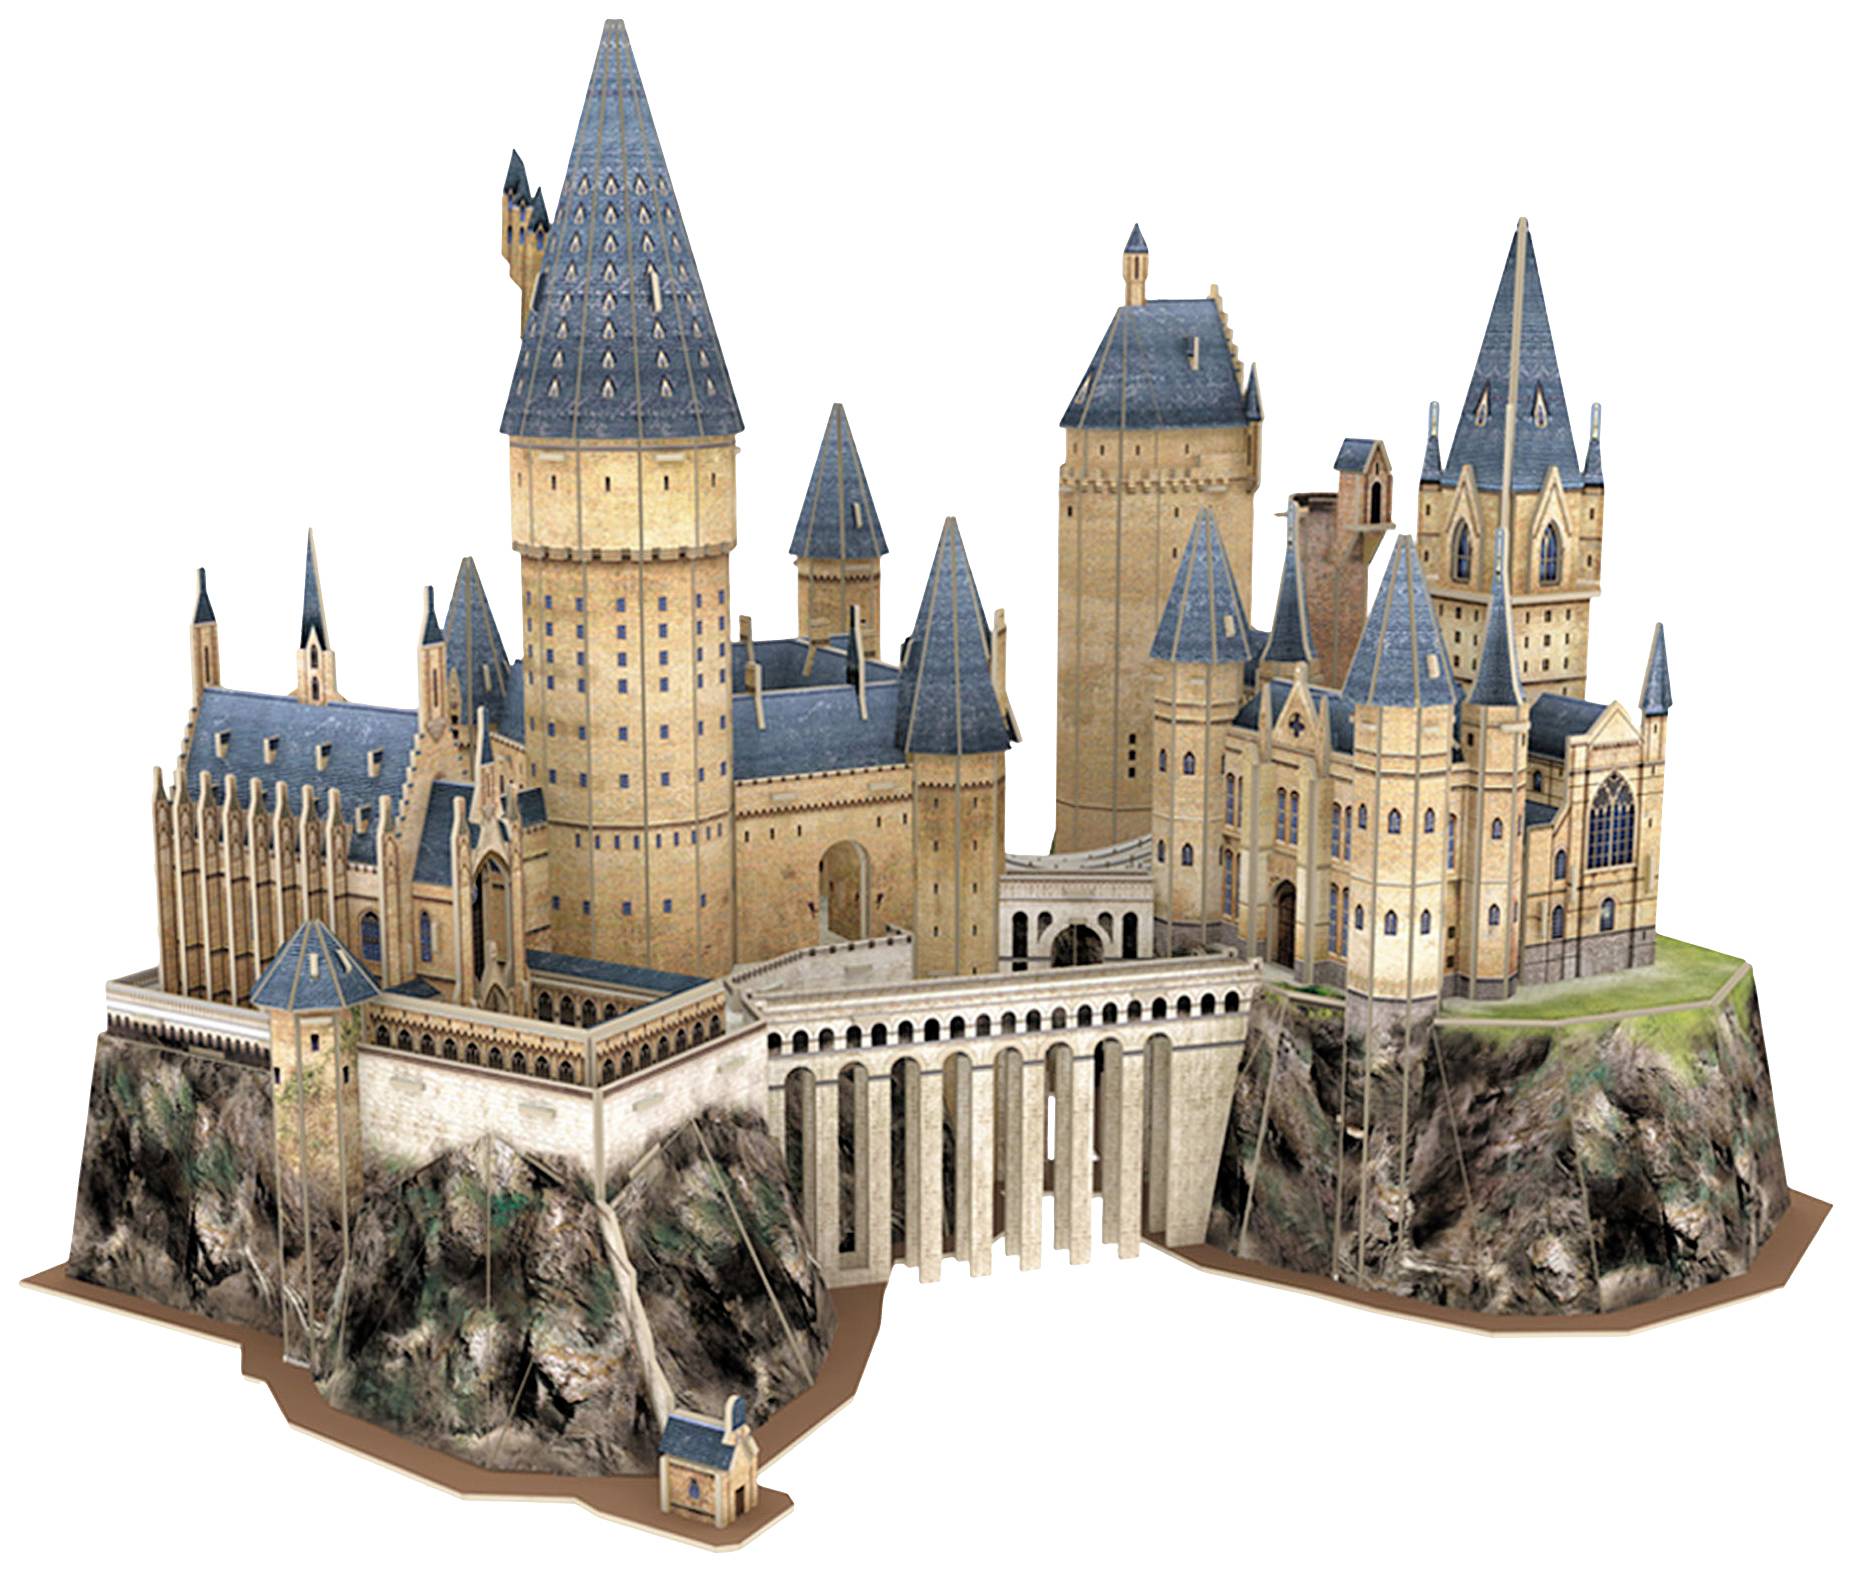 Harry Potter 3D Puzzle 